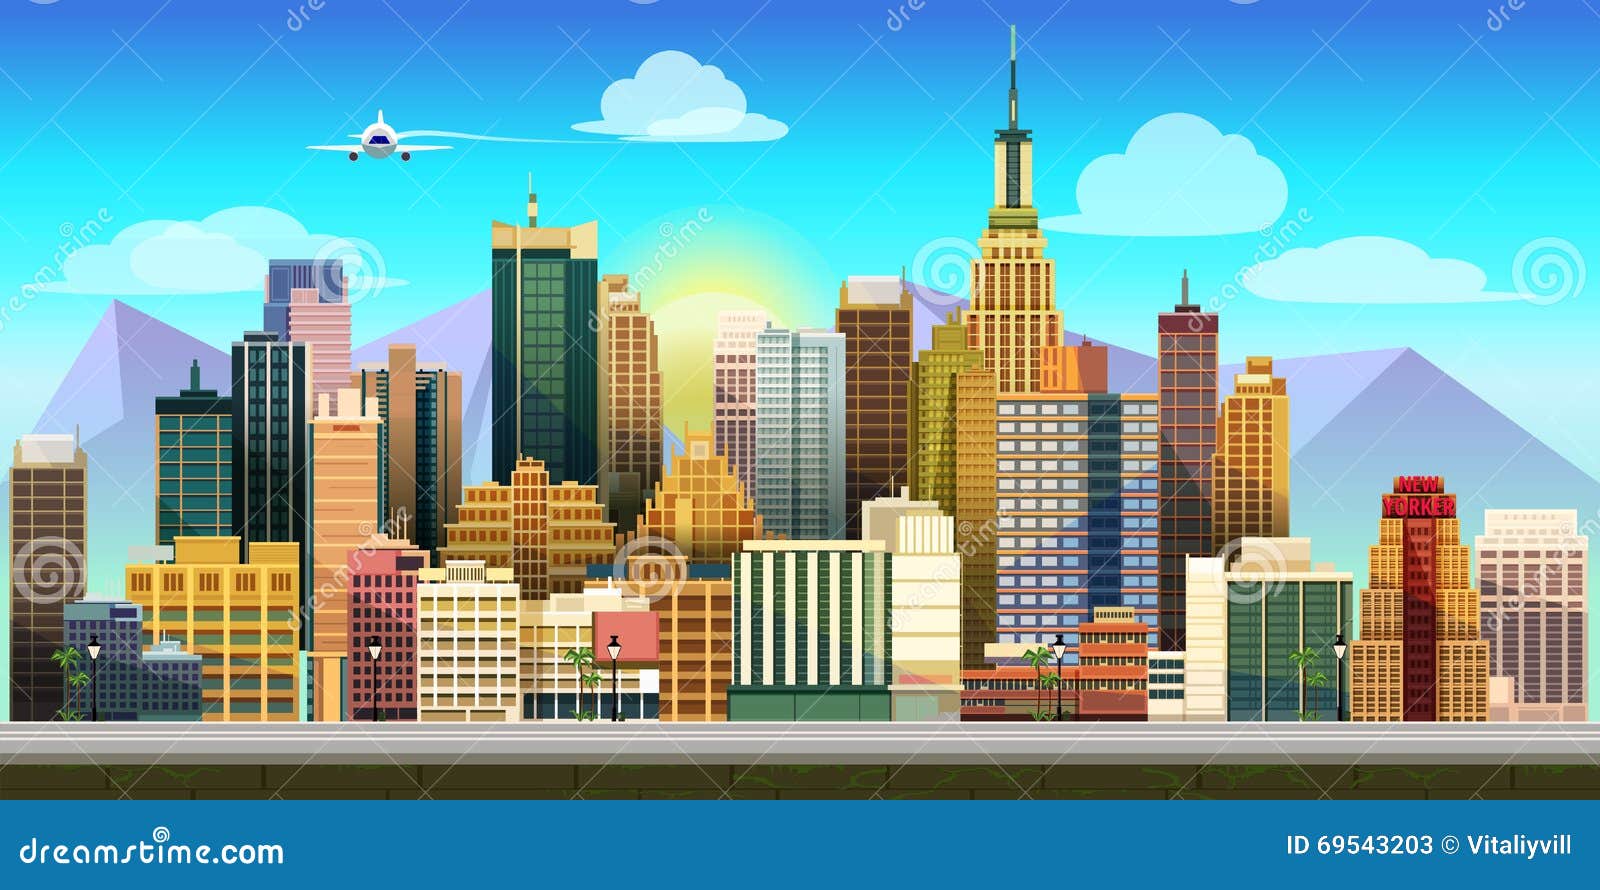 Nền trò chơi thành phố vector là một hình ảnh đầy mạnh mẽ với các hình ảnh được minh họa liên quan đến sức mạnh. Hãy tìm hiểu thêm về những trò chơi thú vị và nổi bật nhất trong thành phố này.